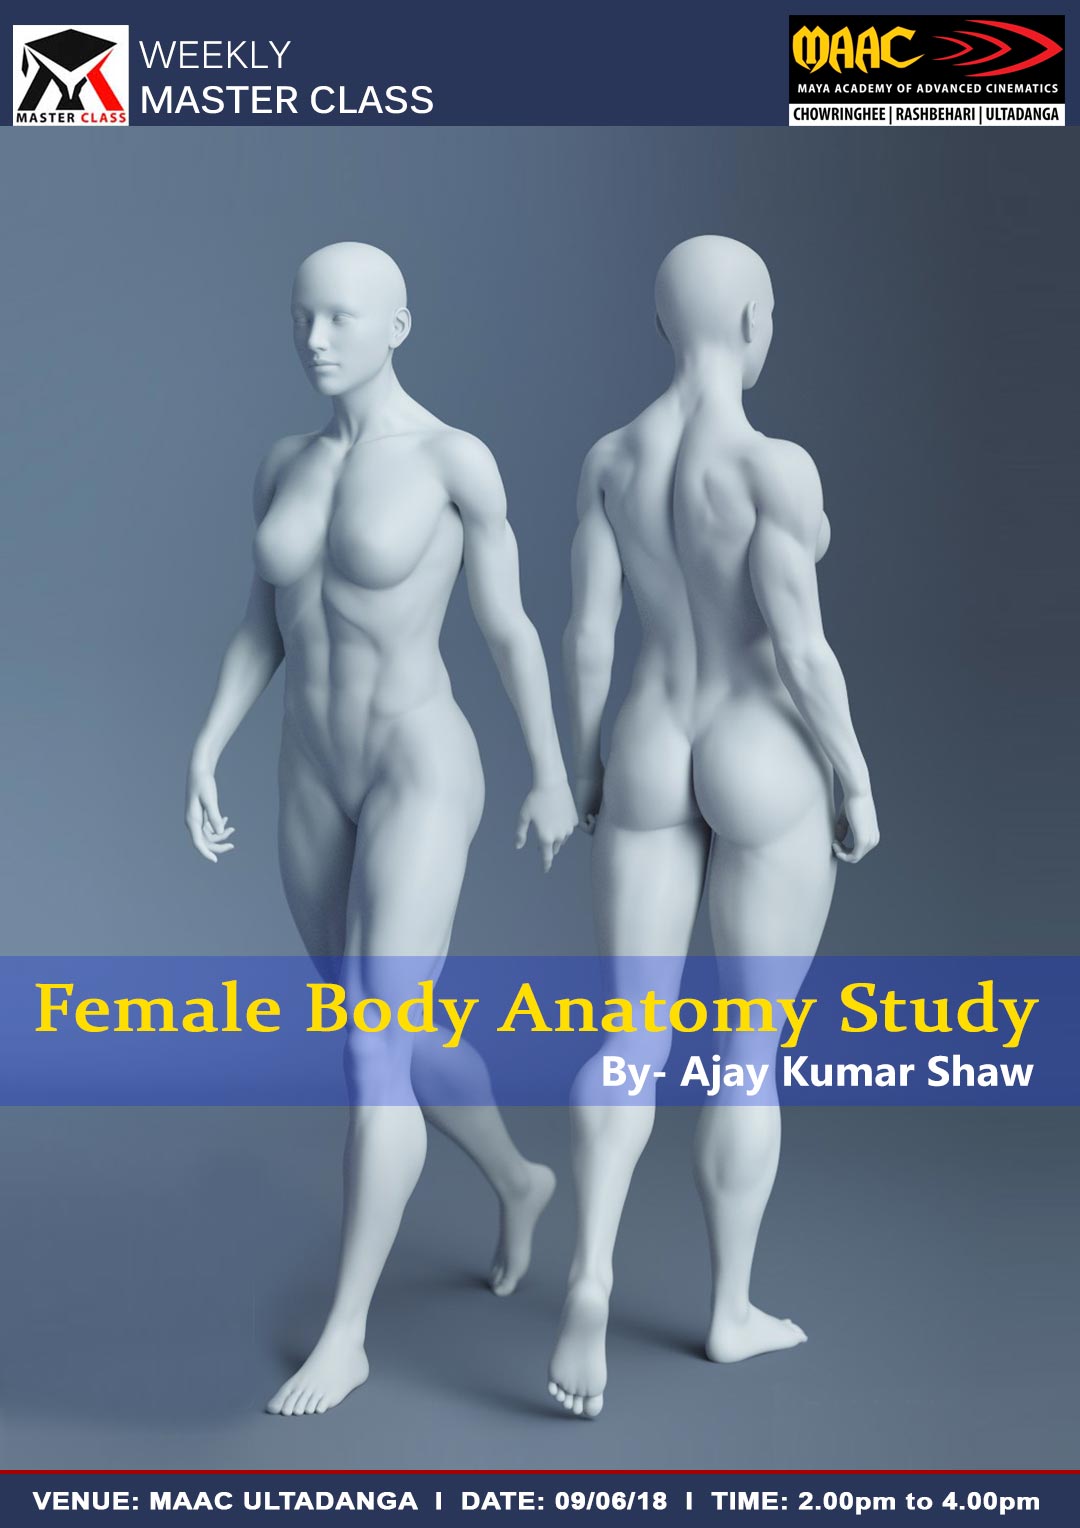 Weekly Master Class on Female Body Anatomy Study